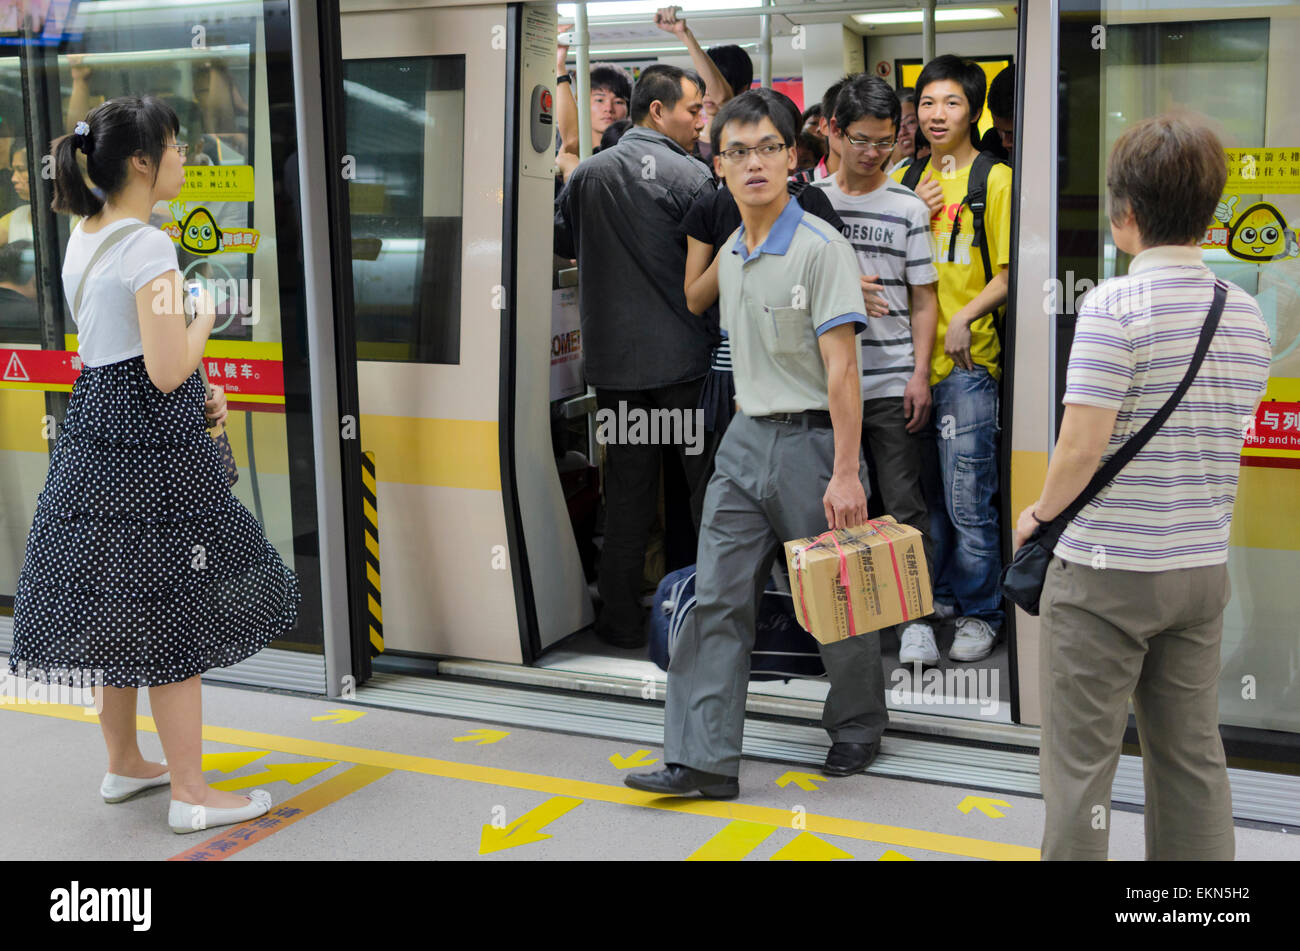 Passagiere steigen Sie eine u-Bahn in Guangzhou, China. Bahnsteigtüren ist zwischen der Plattform Zugtüren klar ersichtlich. Öffentliche Verkehrsmittel; u-Bahn Stockfoto